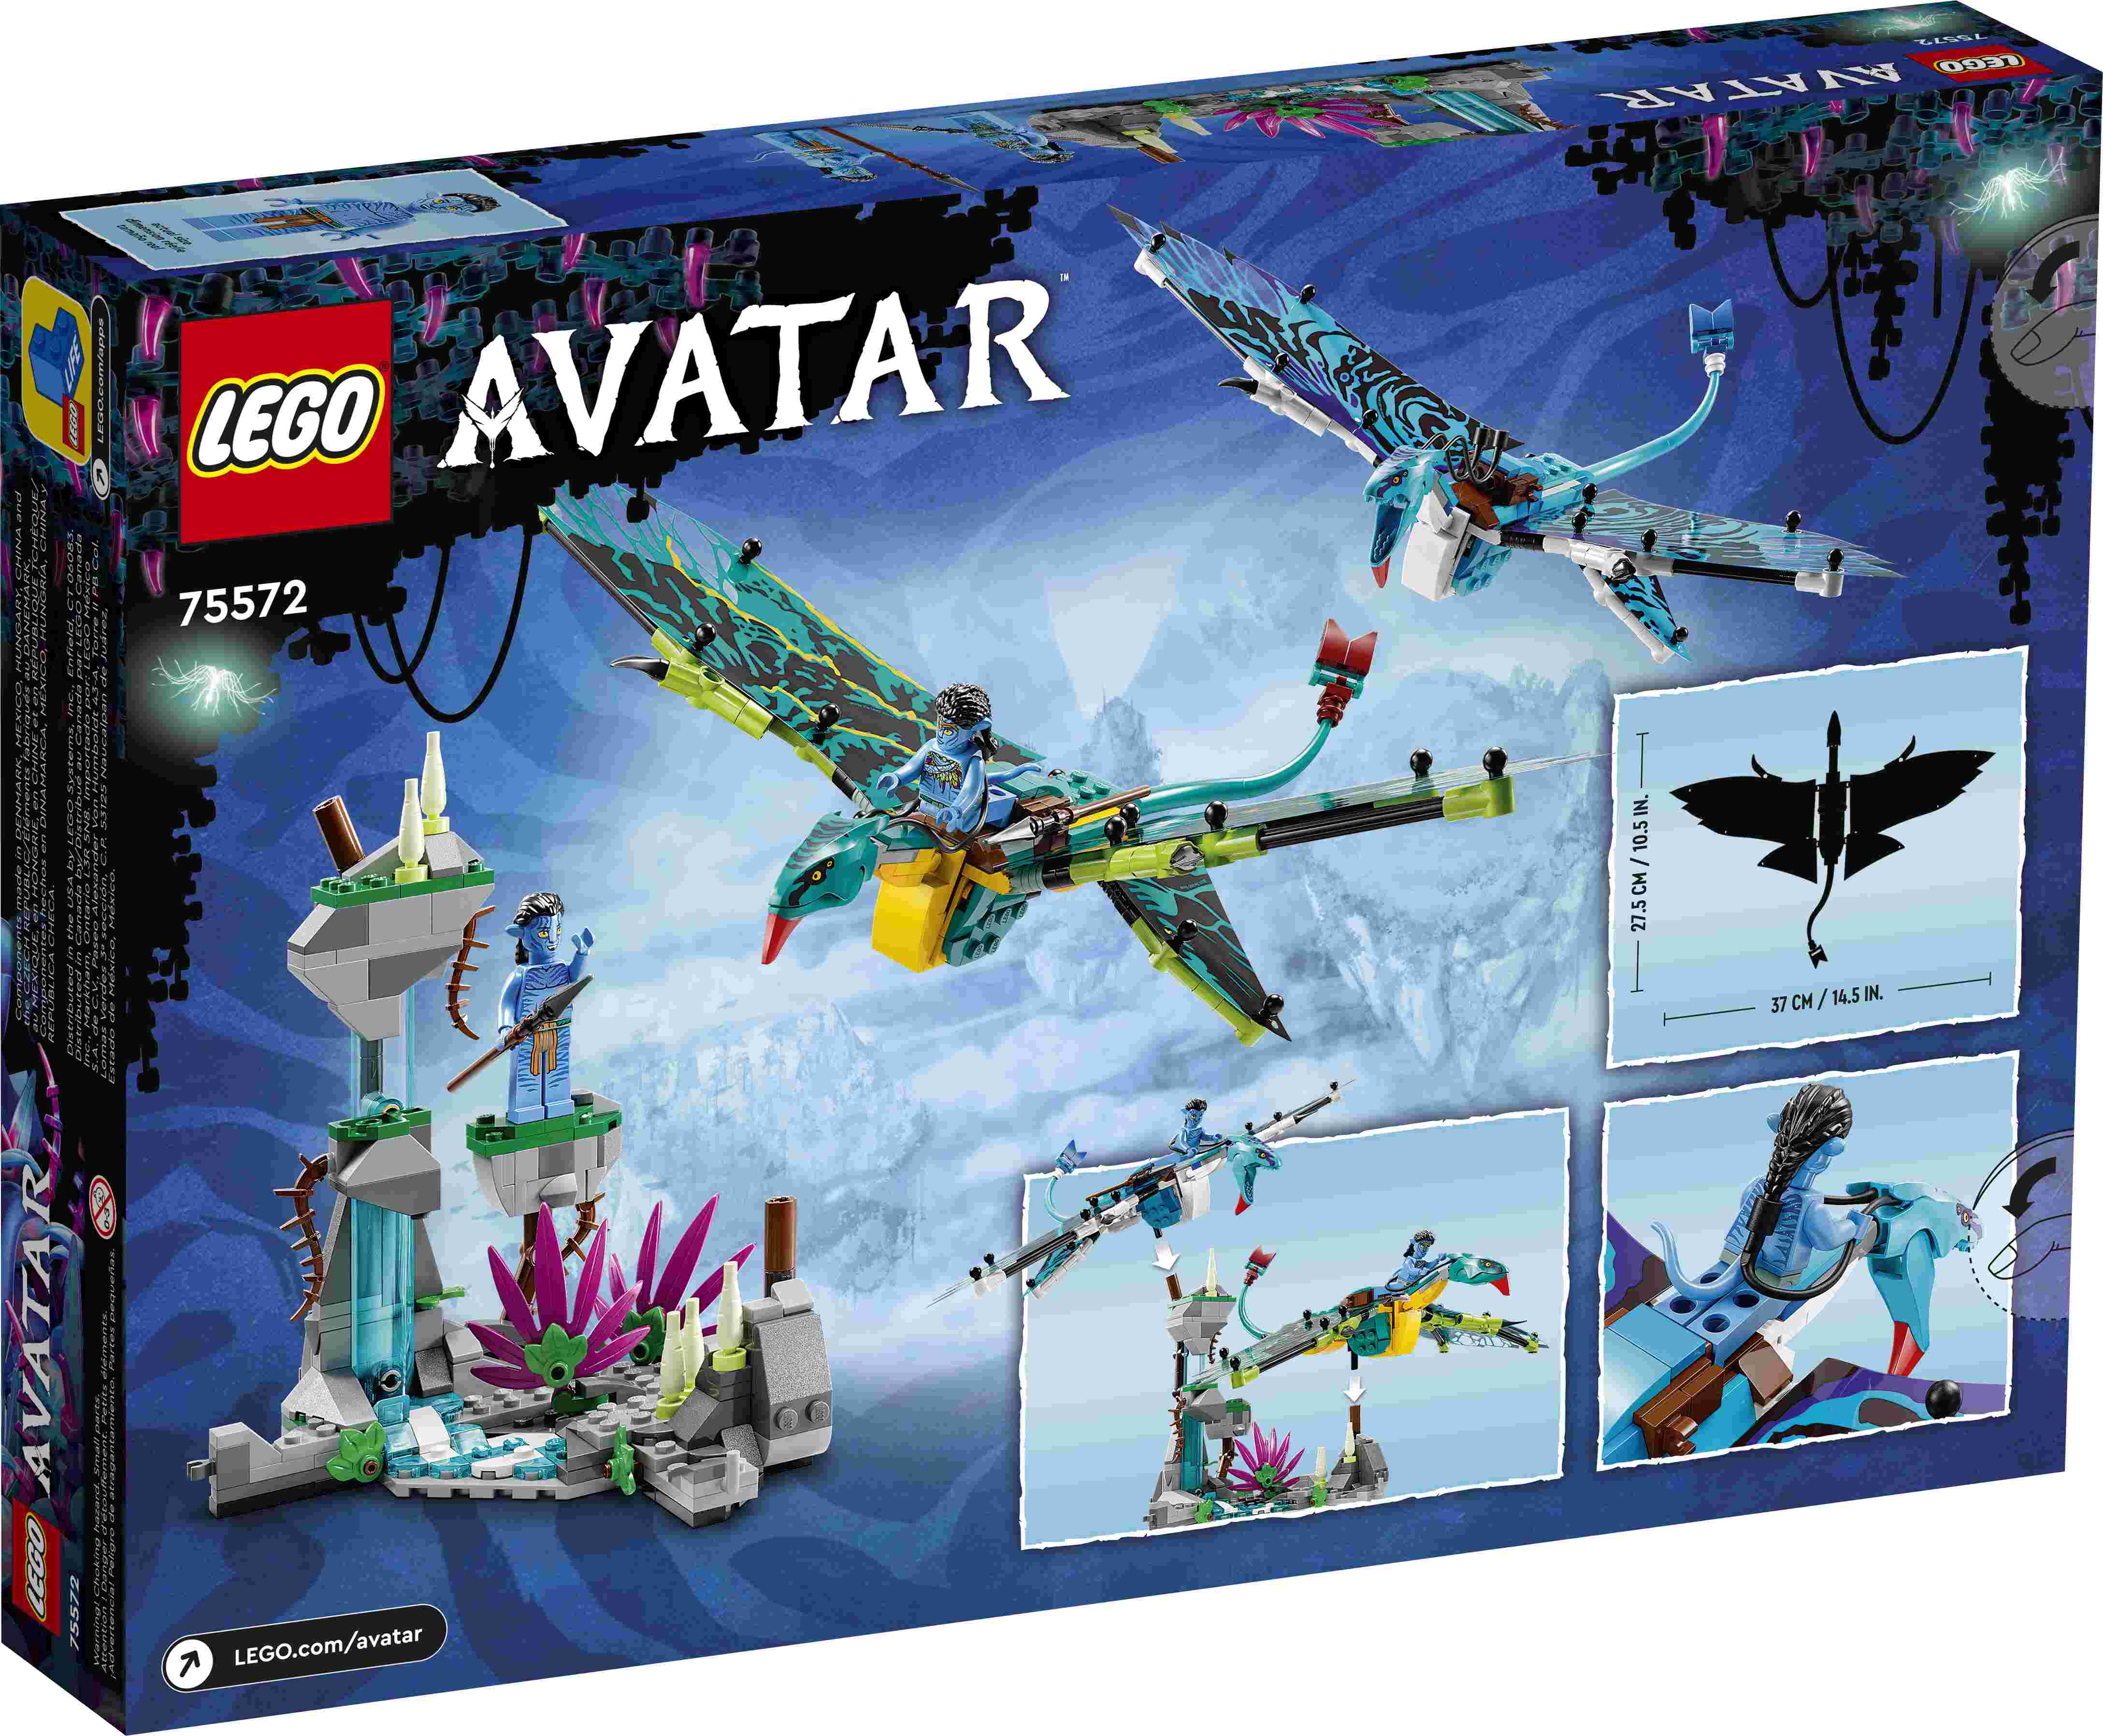 LEGO 75572 Avatar Jake und Neytiris erster Flug auf einem Banshee